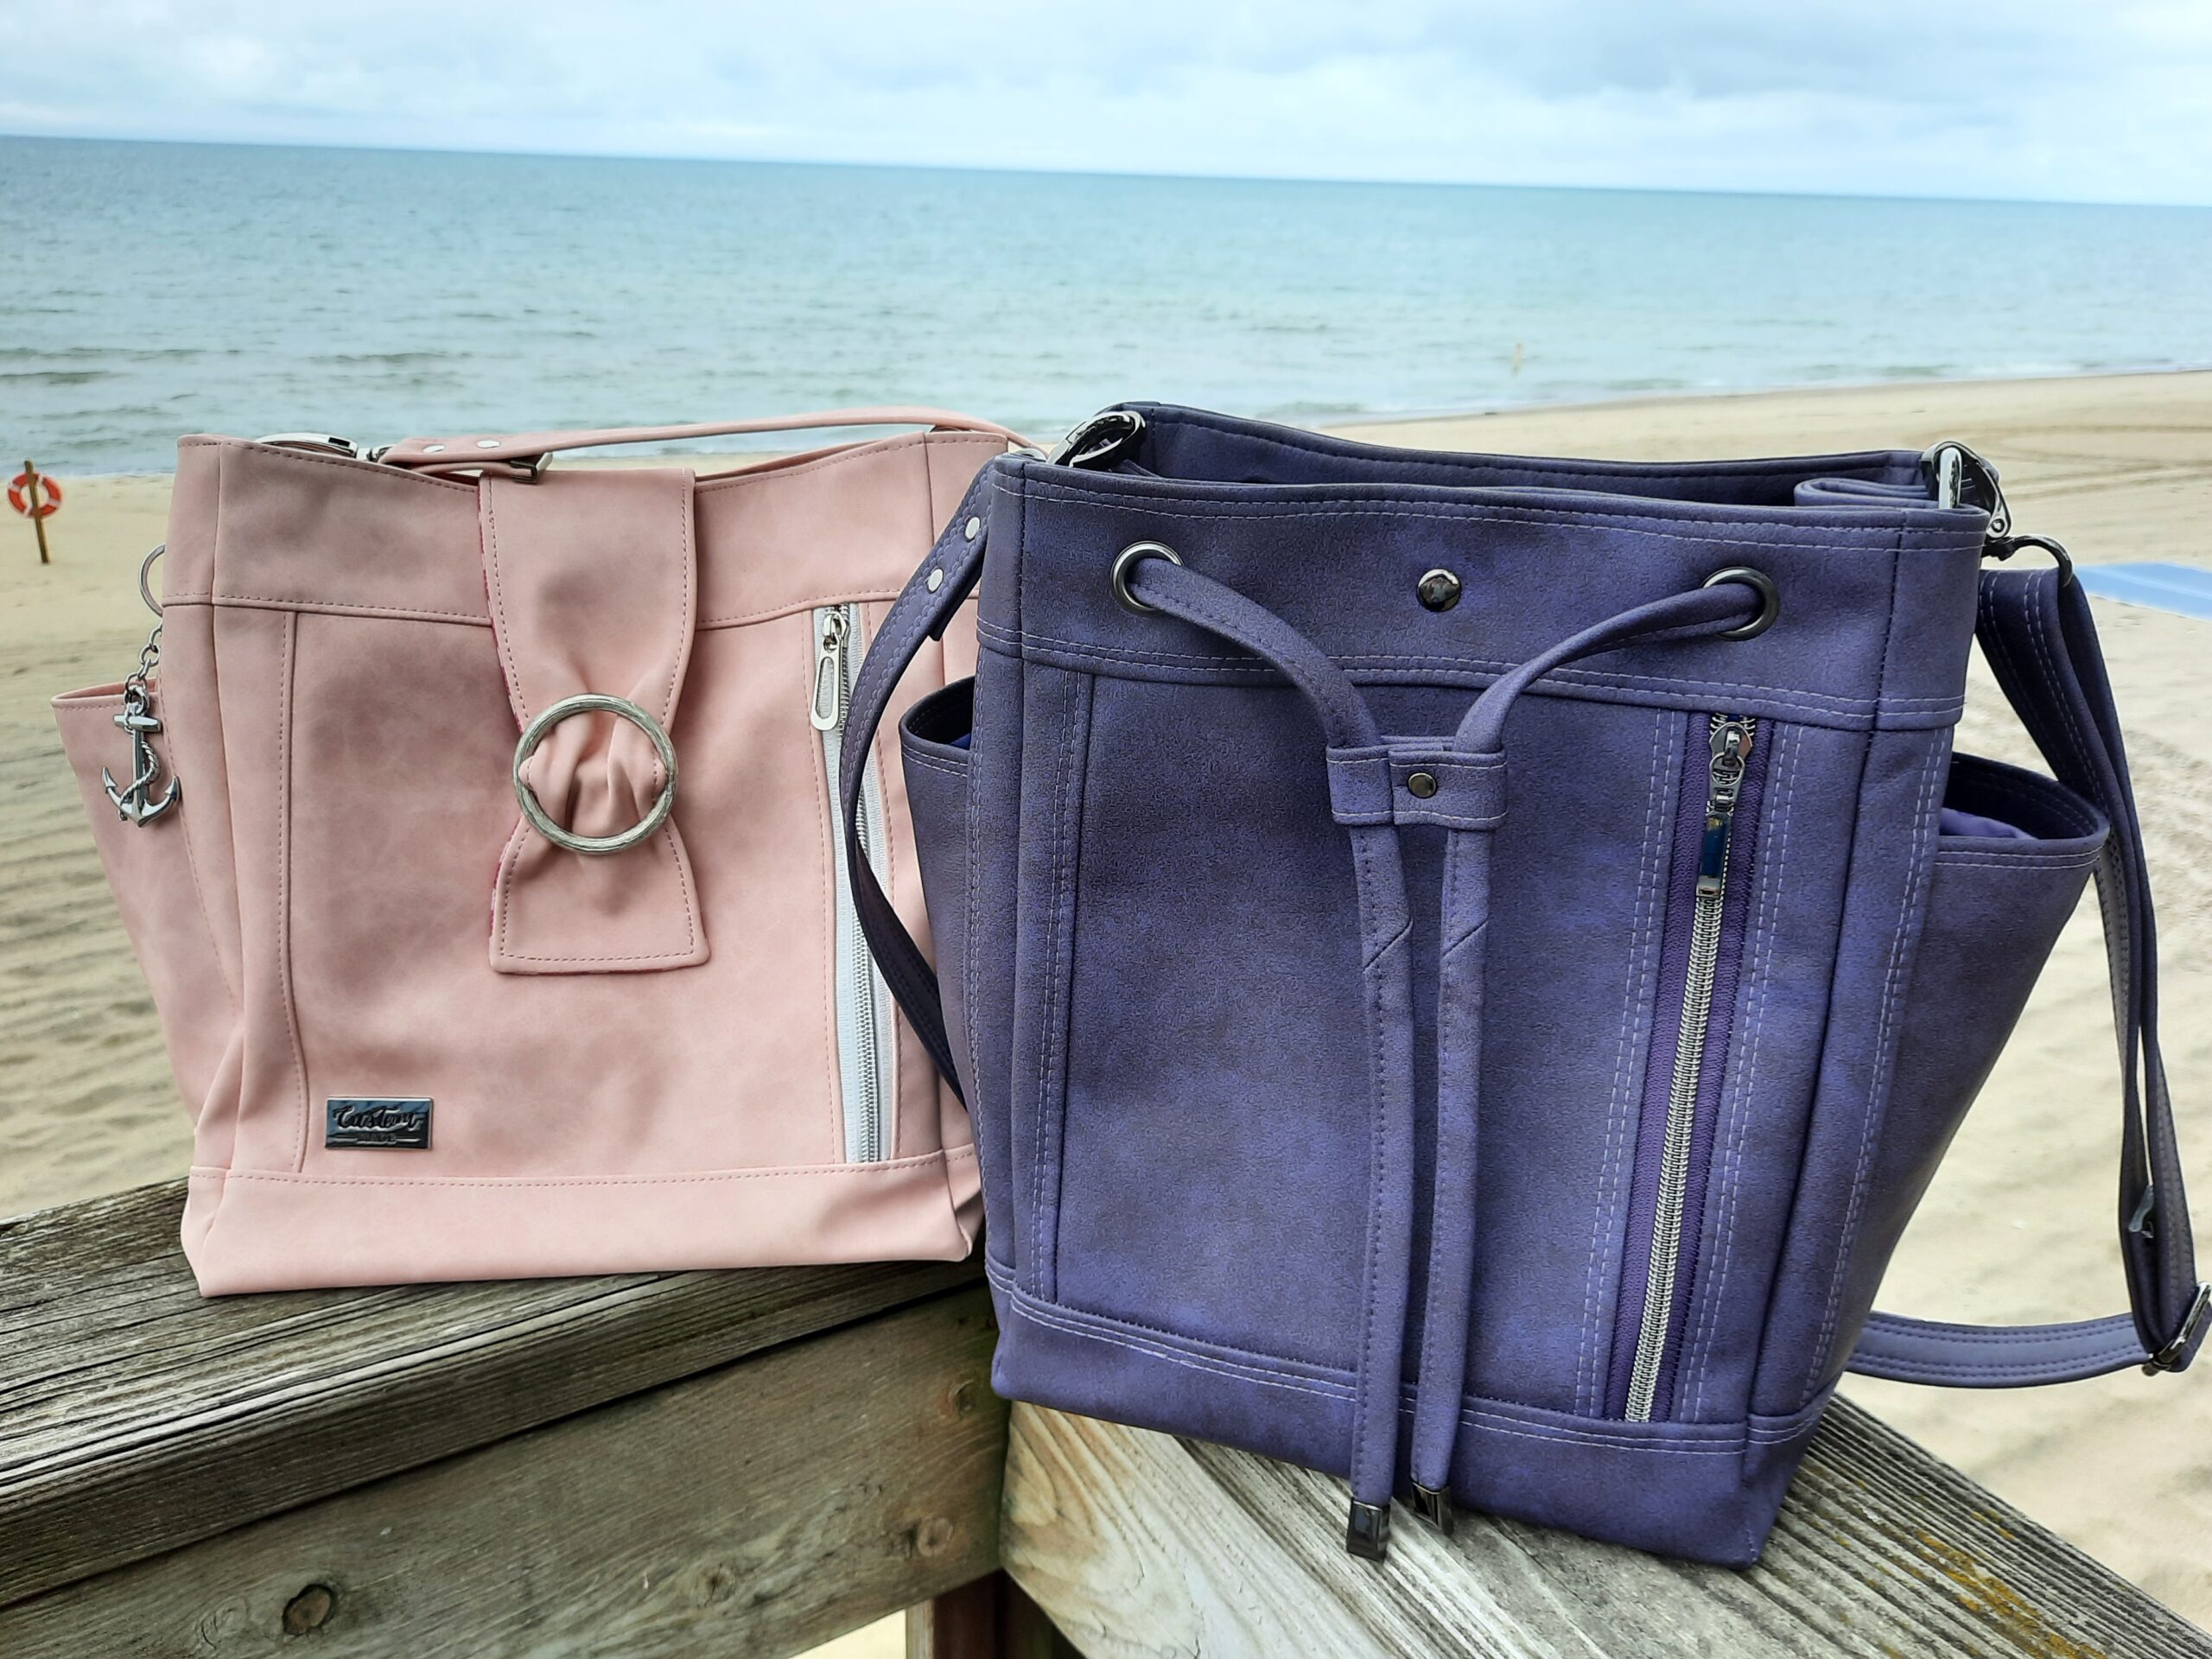 Key West Hobo Shoulder Bag Pattern (PDF) - Classy Designs By Dawn